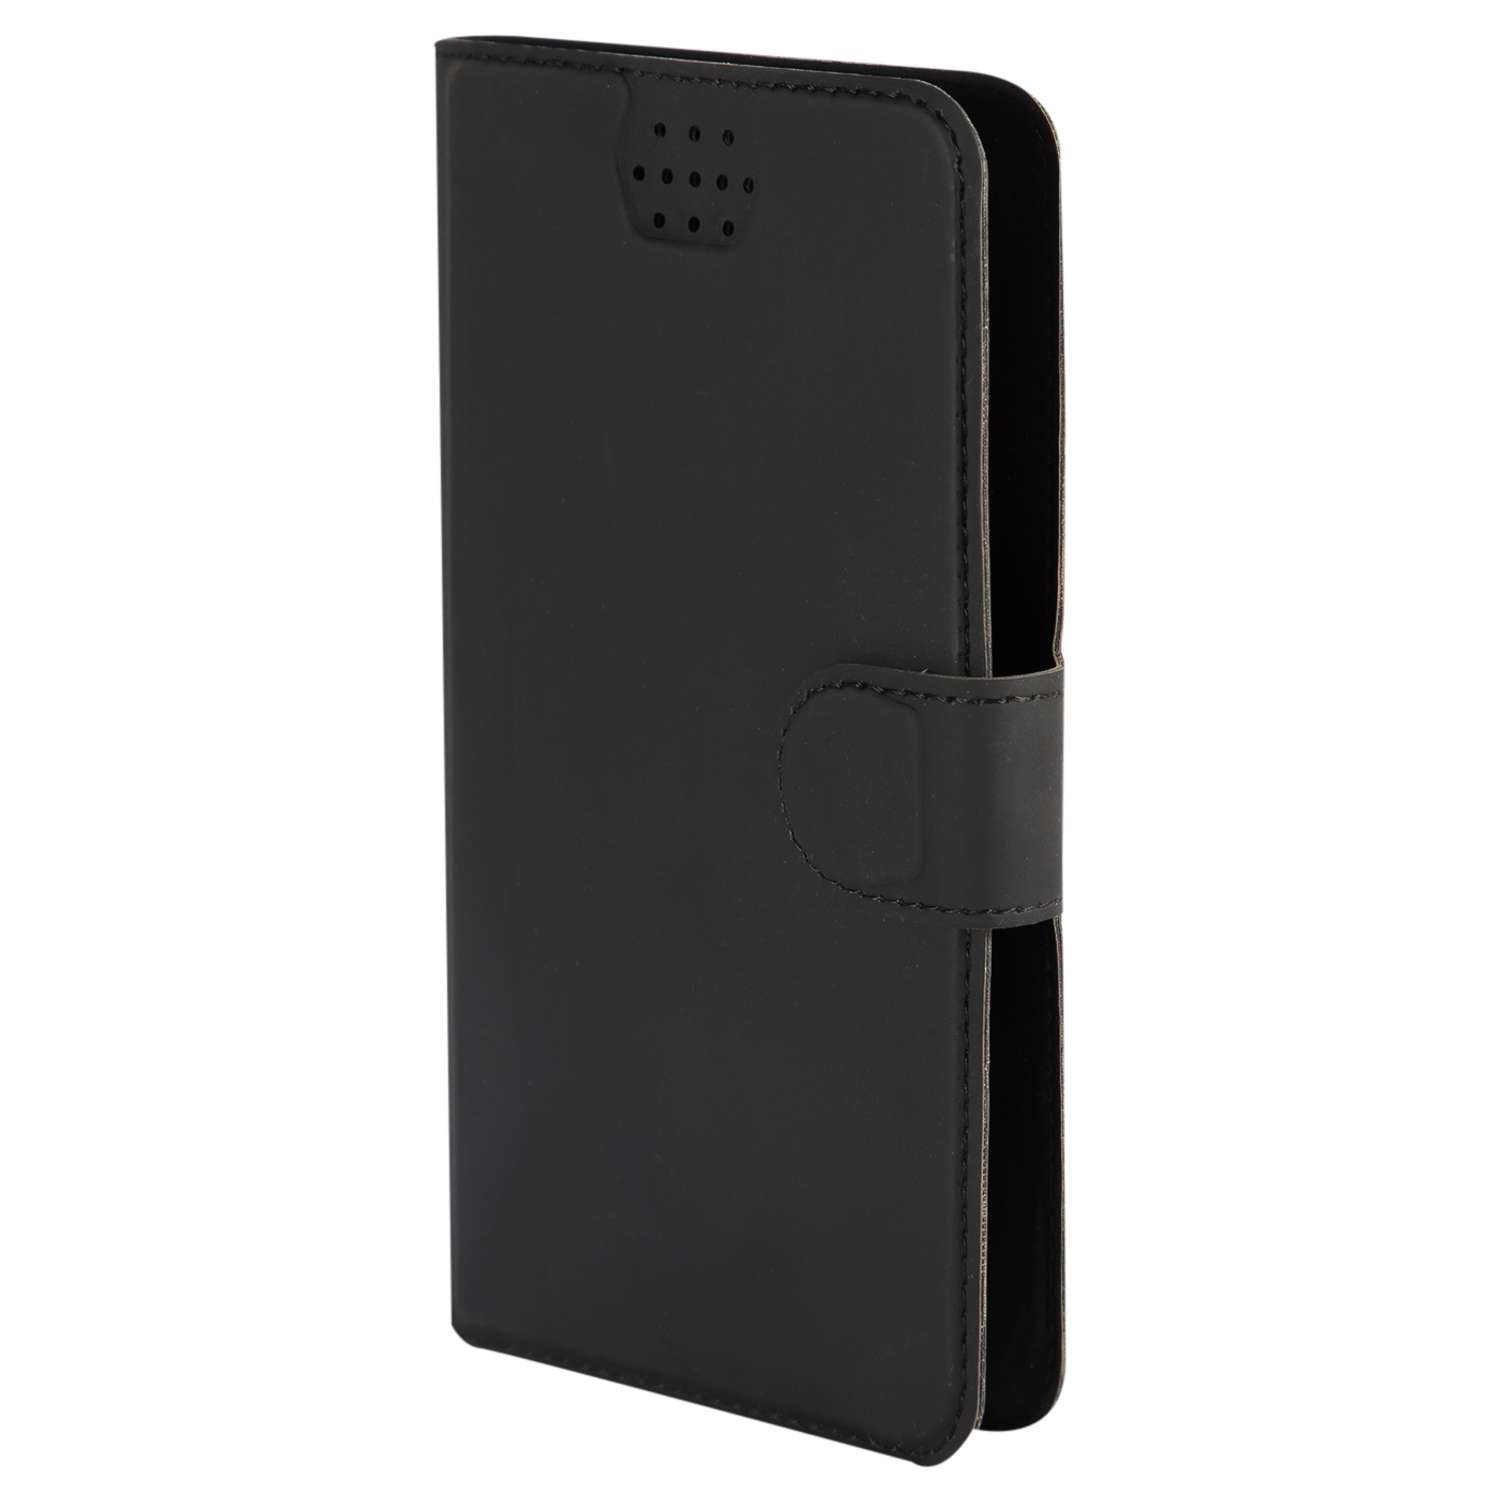 Чехол универсальный iBox UniMotion для телефонов 4.3-5 дюйма черный - фото 1